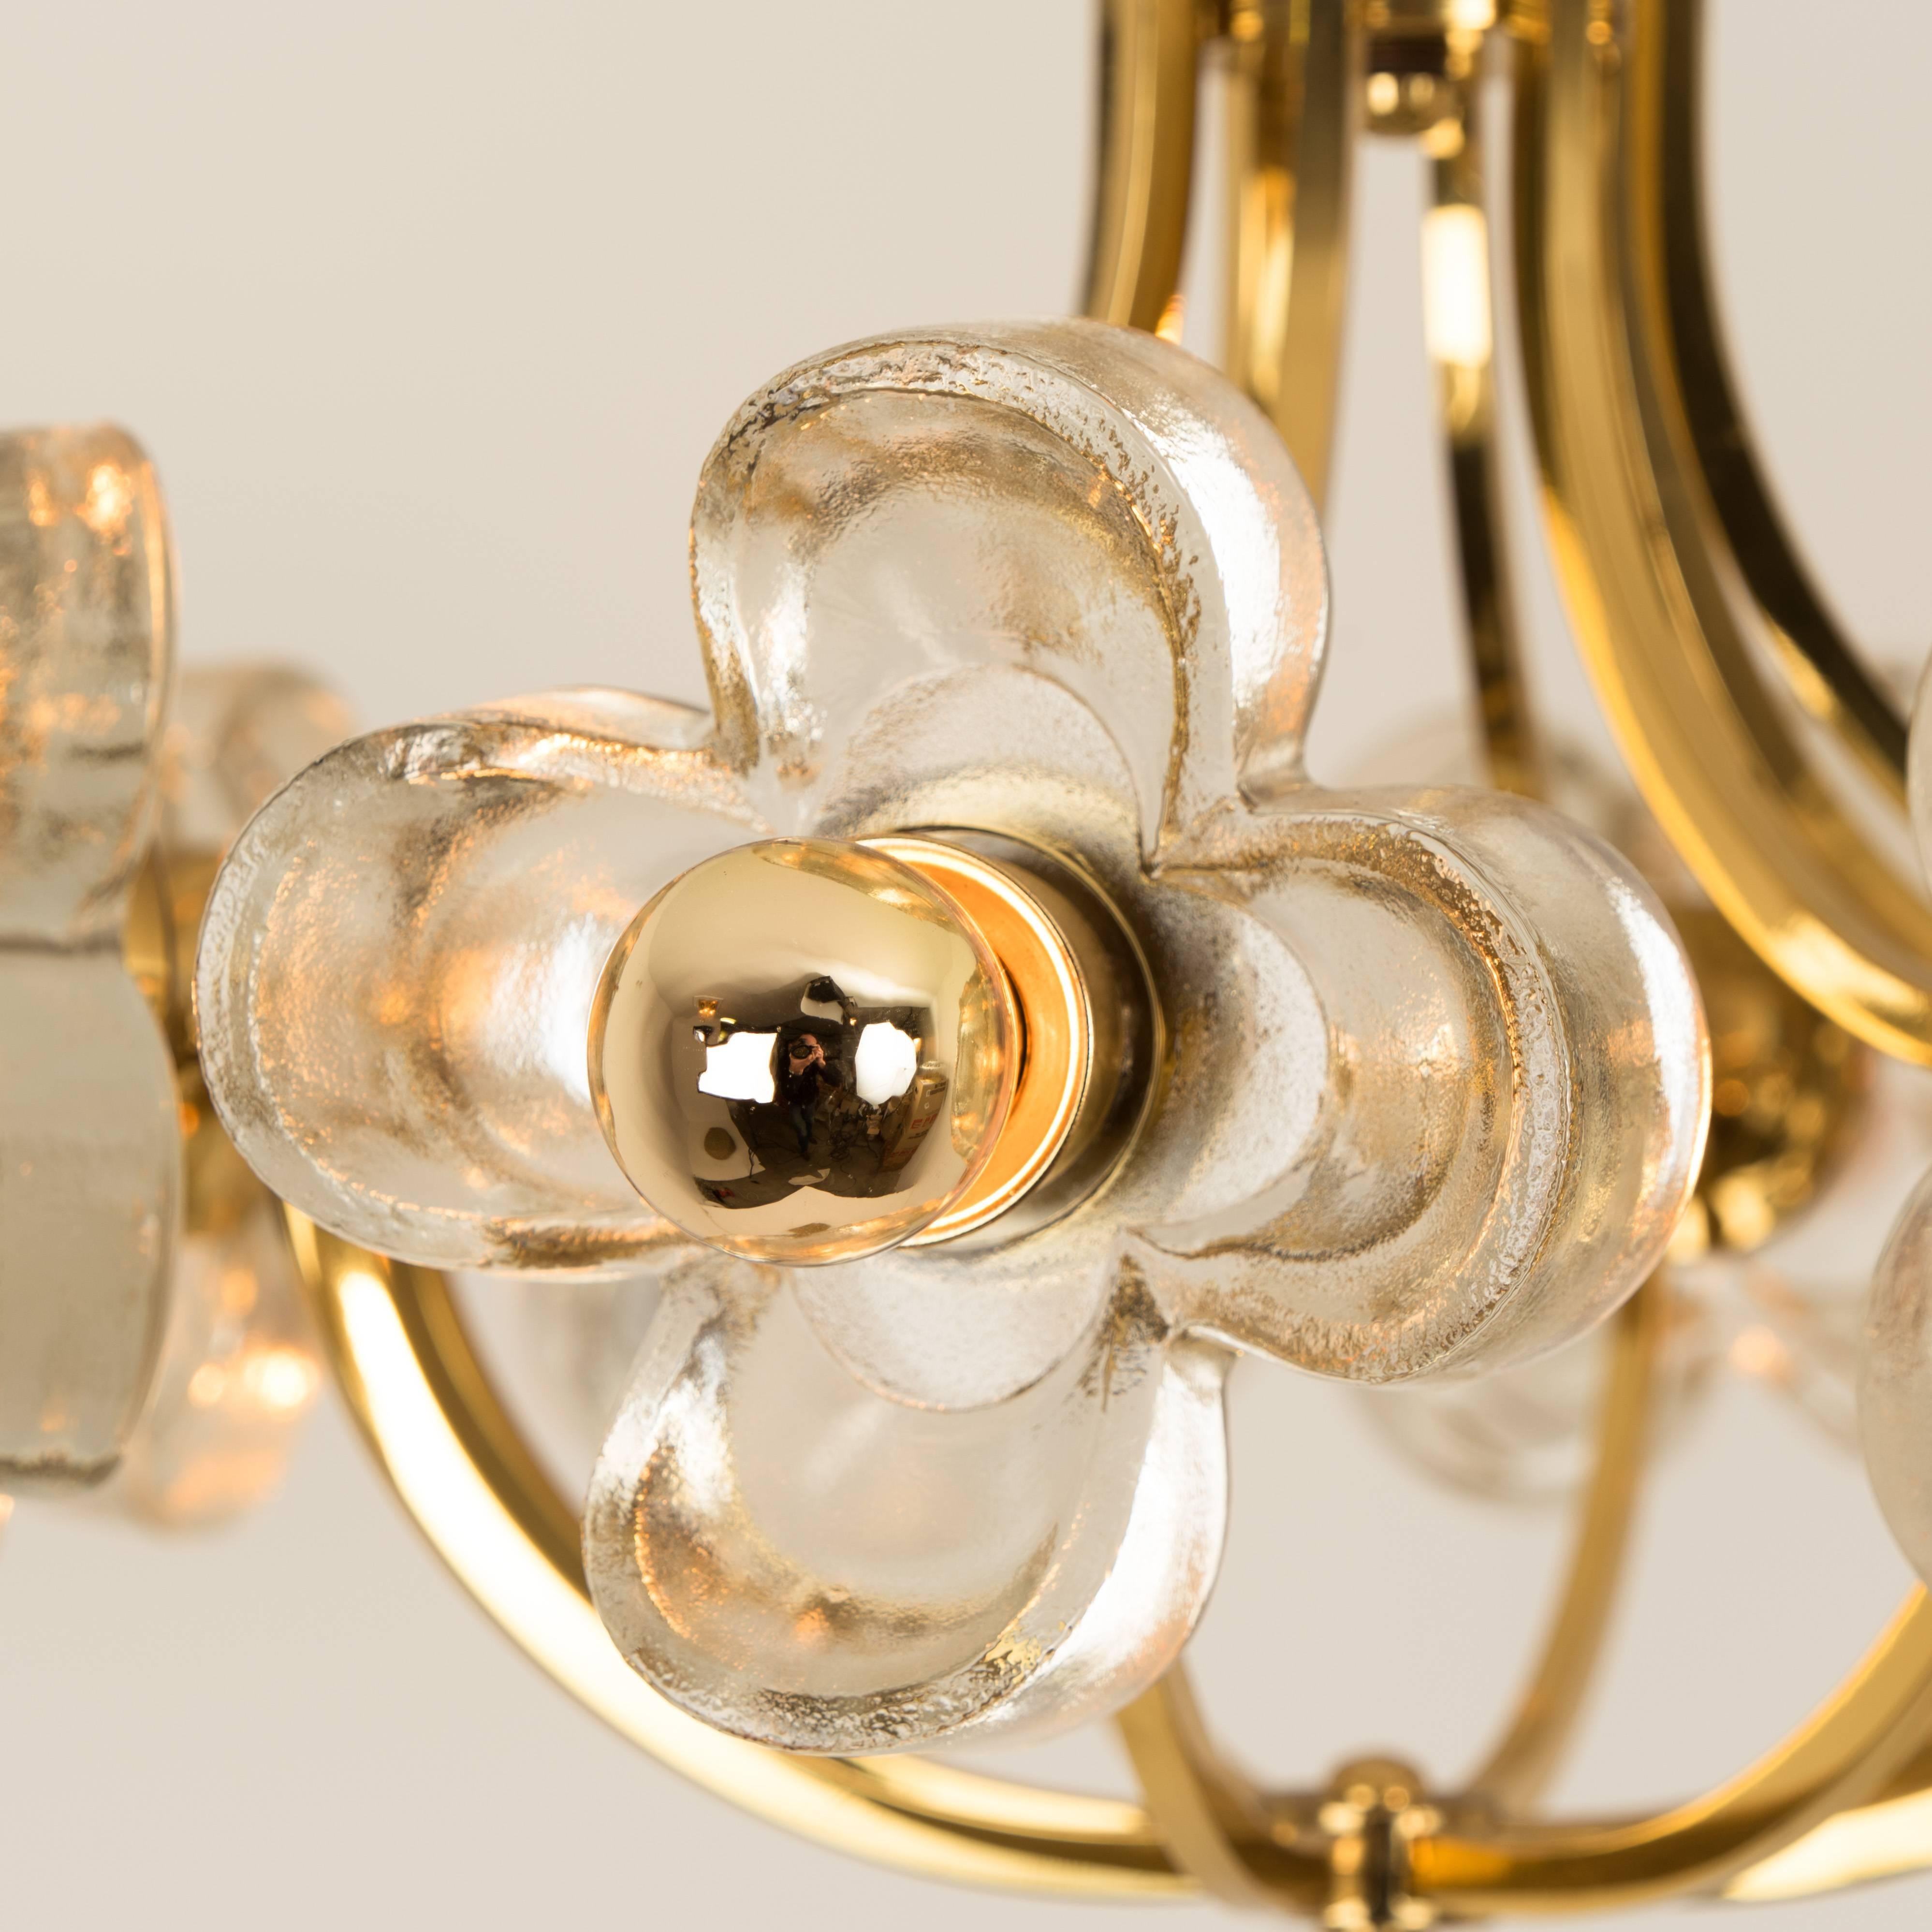 20th Century Sische Glass & Brass Chandelier, 1960s Modernist Design, Kalmar Style 